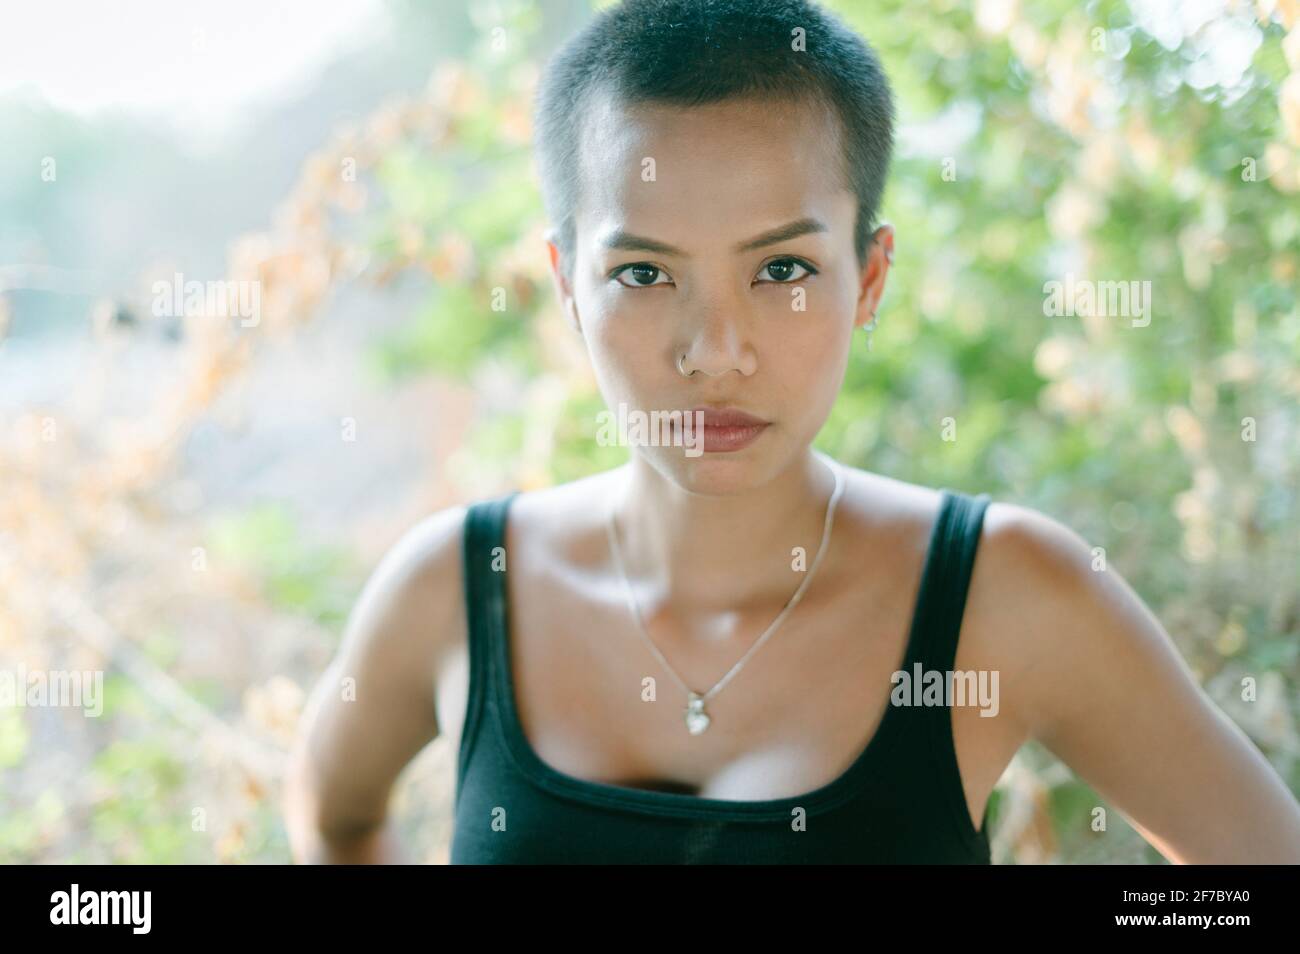 Headshot di una giovane donna di etnia asiatica con capelli corti, indossando un reggiseno sportivo, guardando la fotocamera. Foto Stock